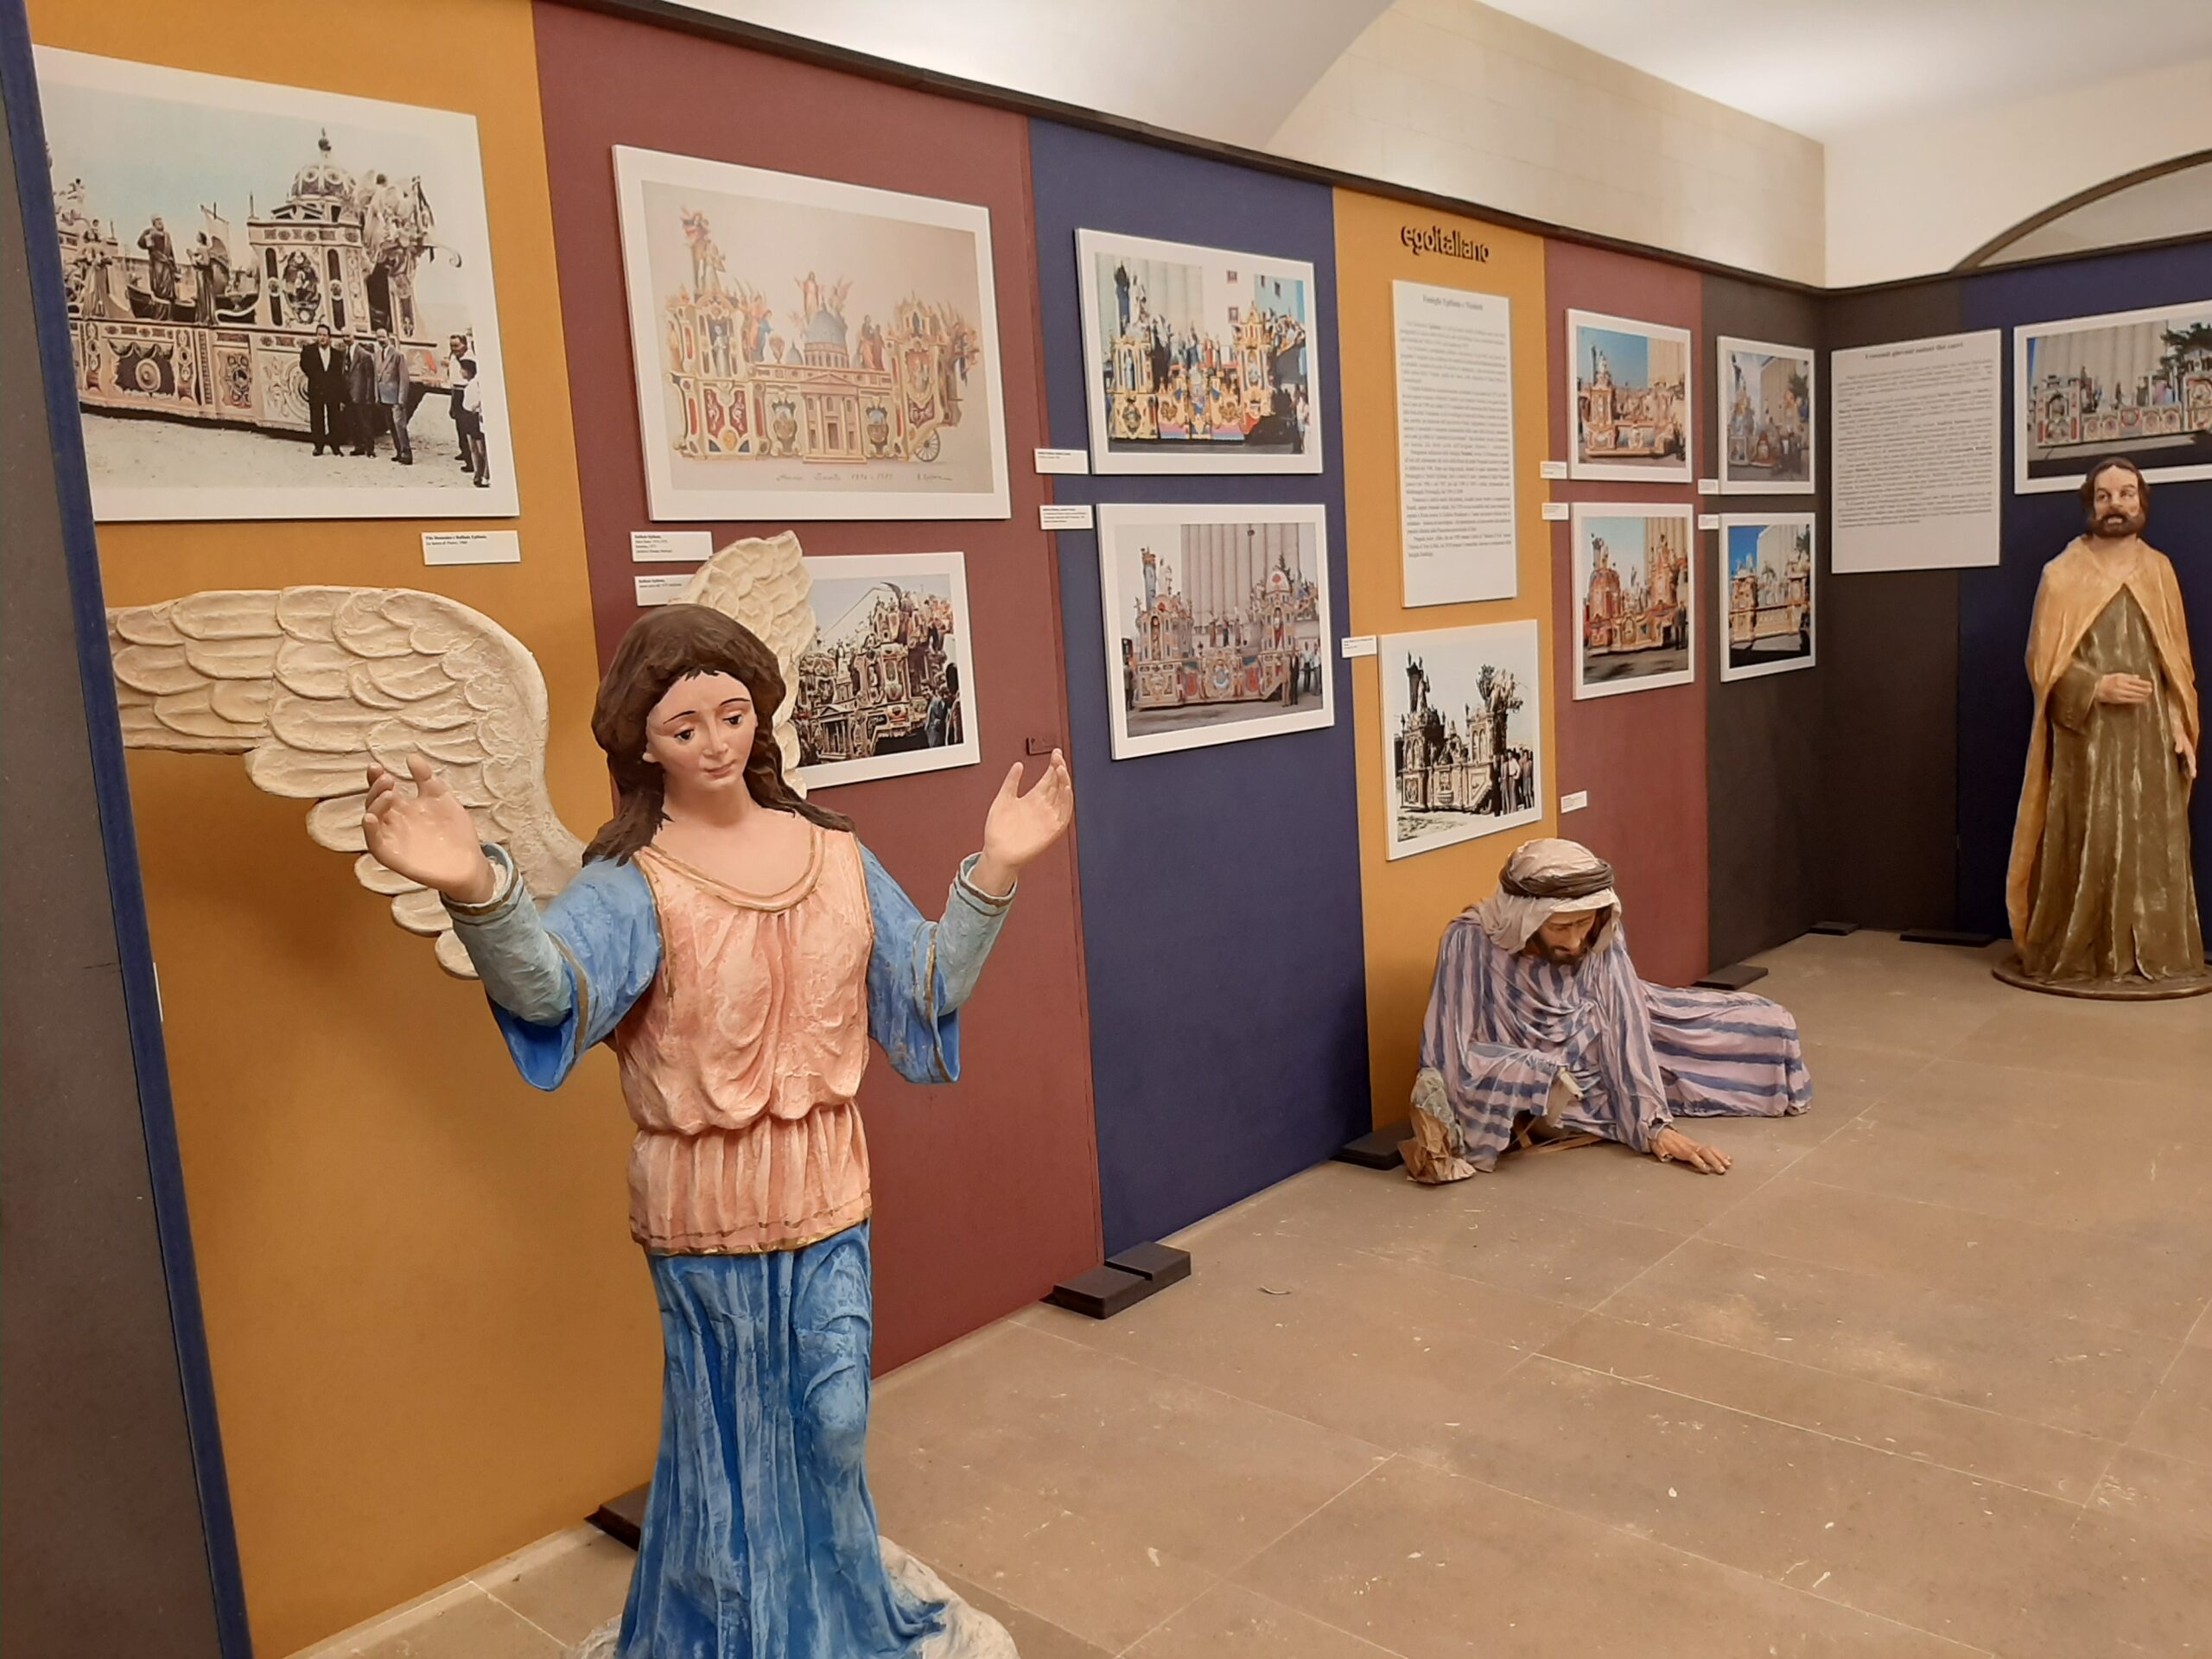 Matera, prorogata fino al 10 ottobre la mostra sugli autori dei carri della Madonna della Bruna allestita presso il museo  “D. Ridola”